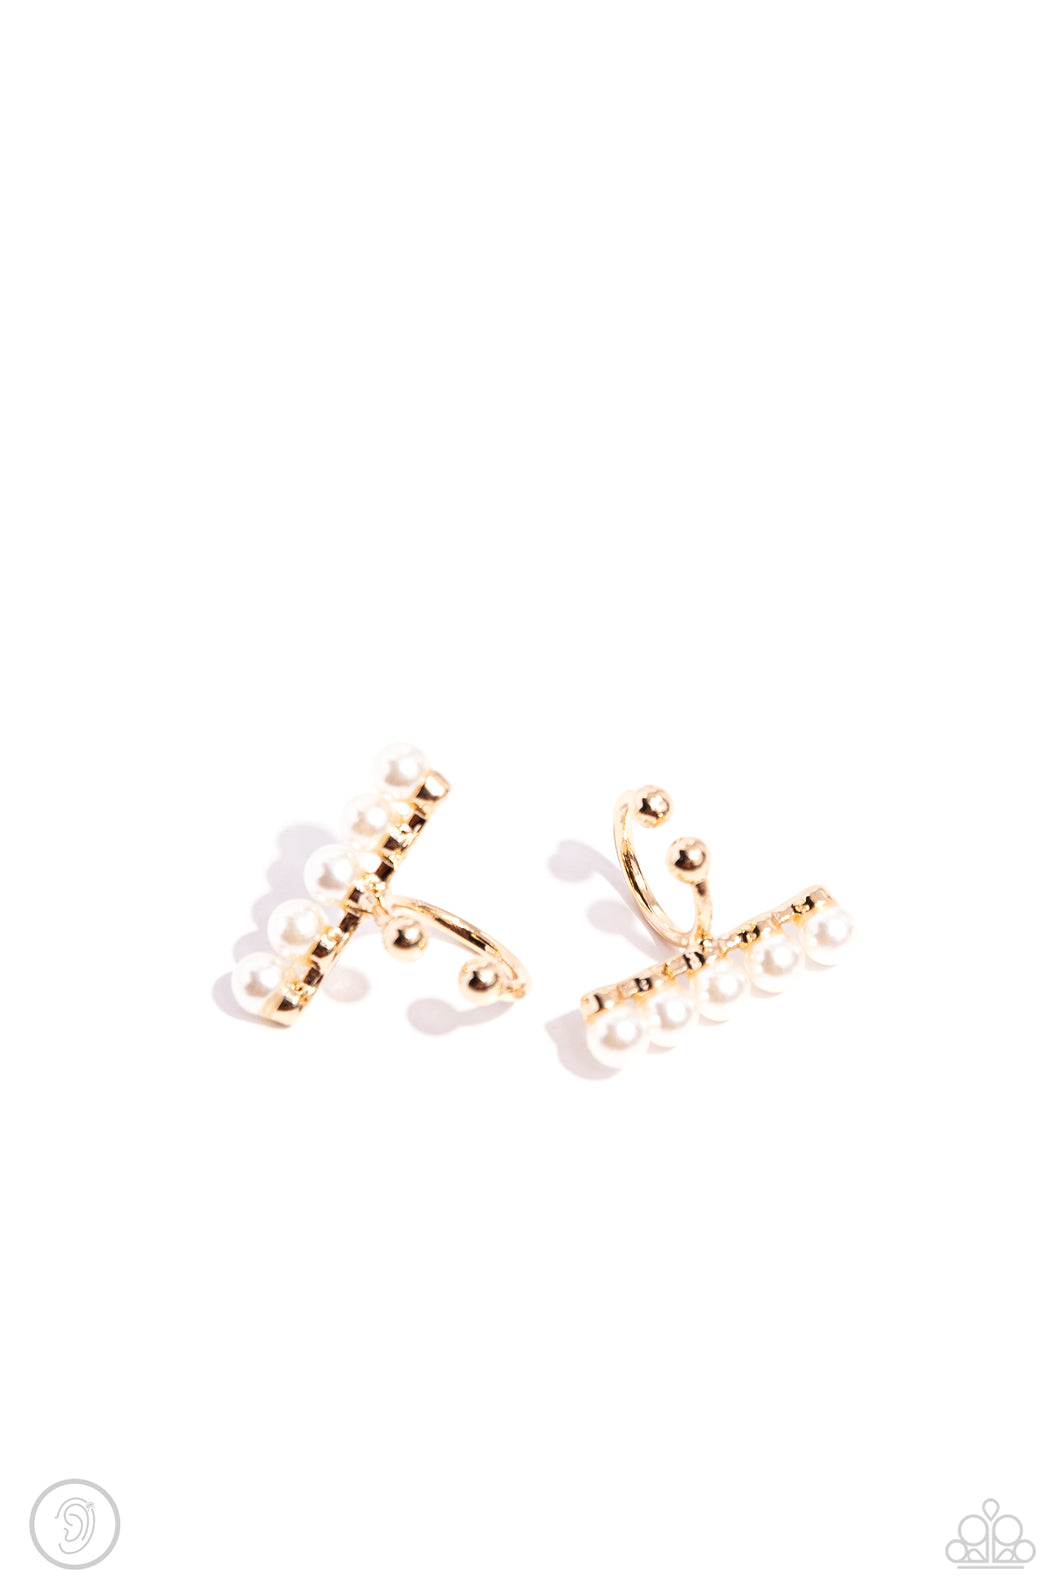 CUFF Love - Gold (White Pearl) Cuff Earring